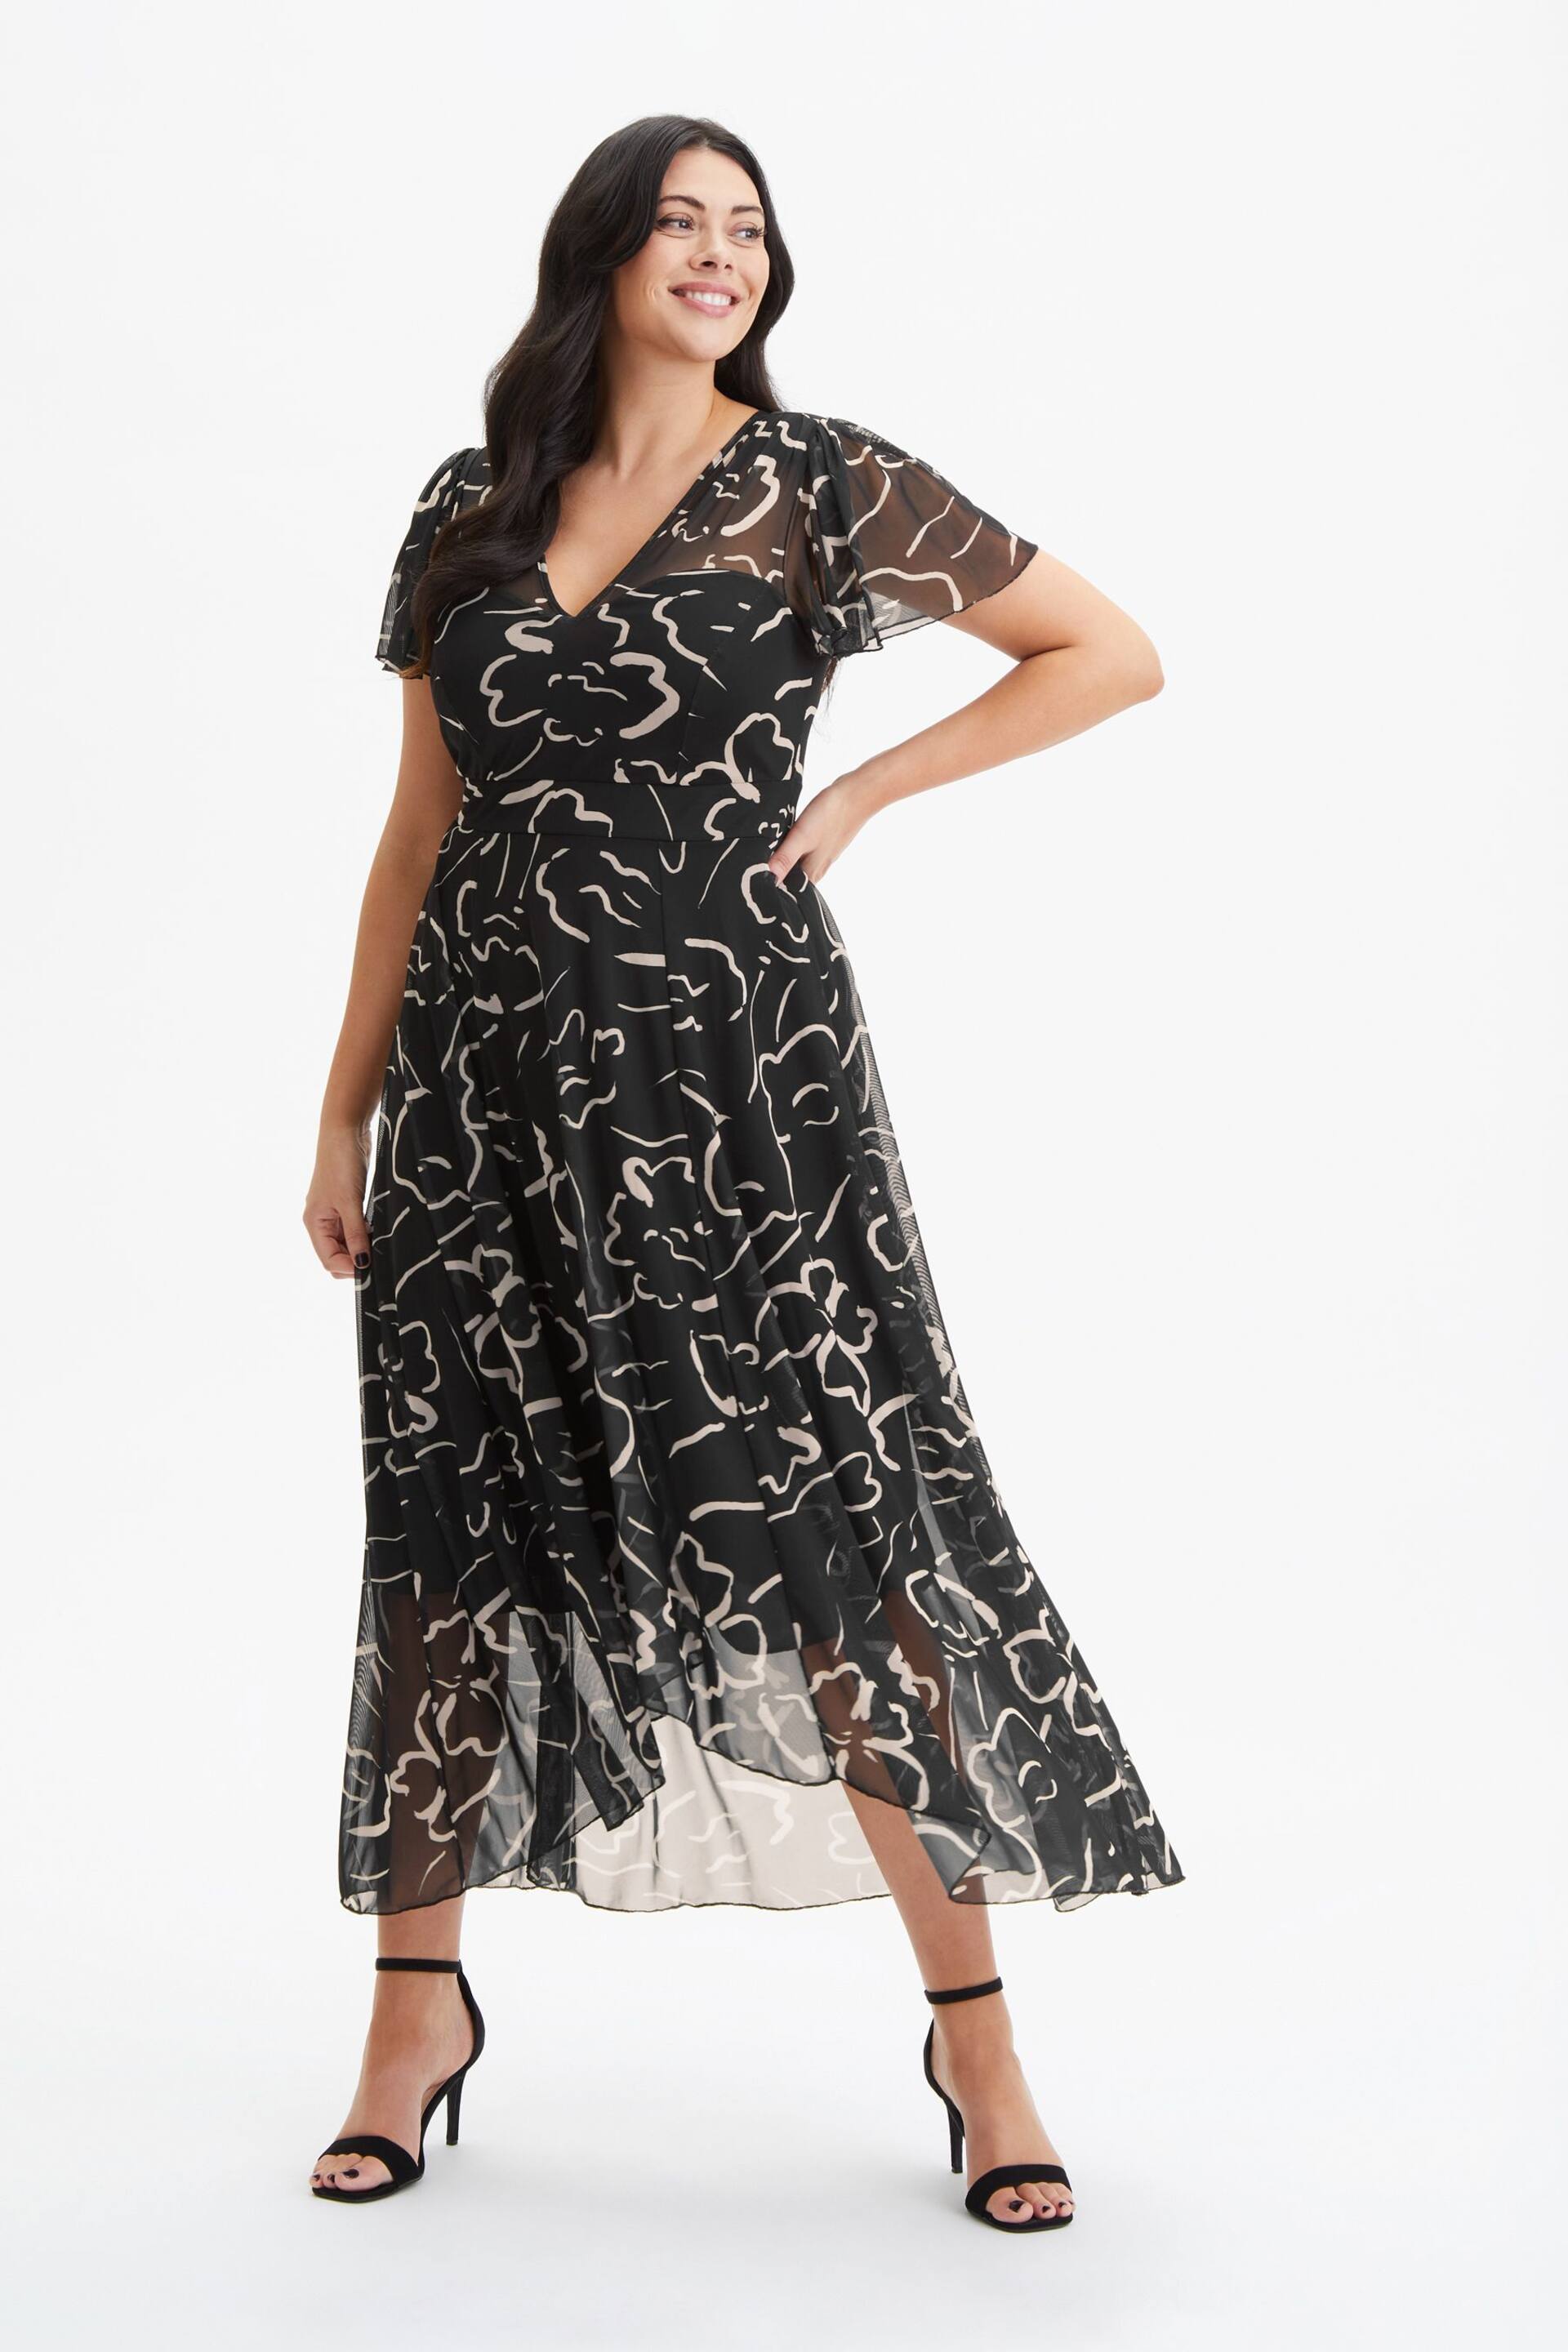 Scarlett & Jo Black Tilly Print Angel Sleeve Sweetheart Dress - Image 1 of 4